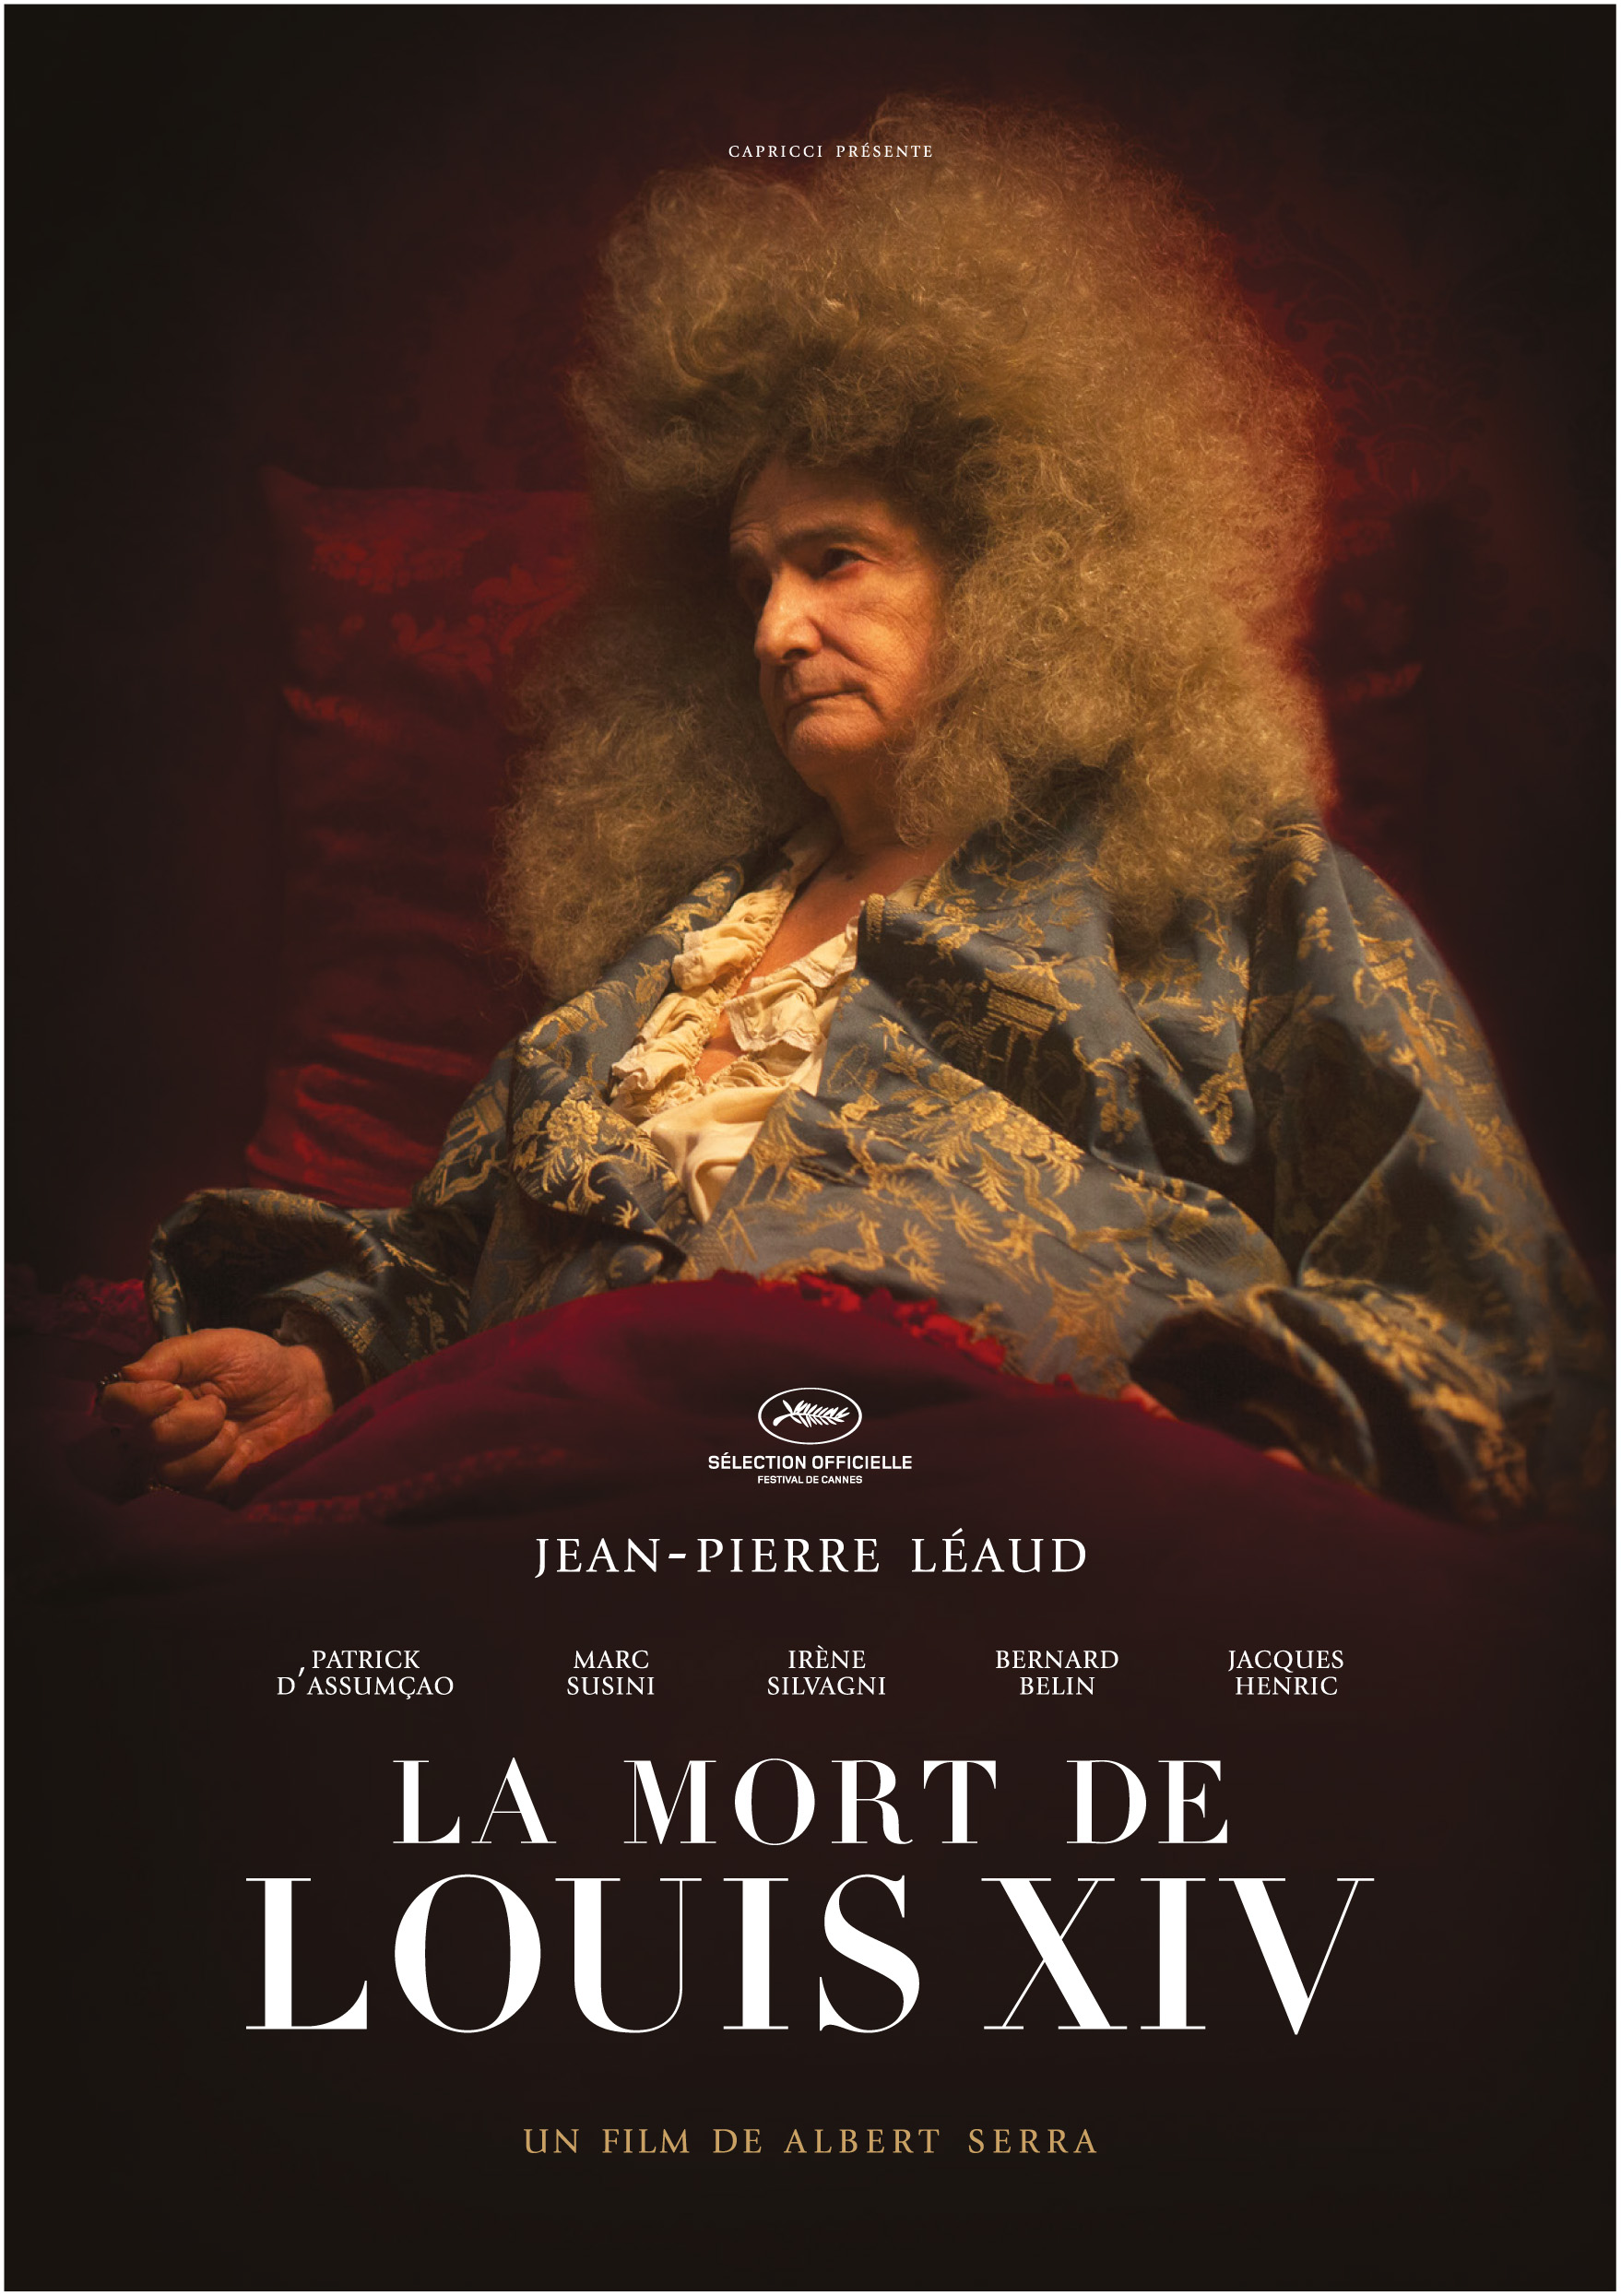 Śmierć Ludwika XIV